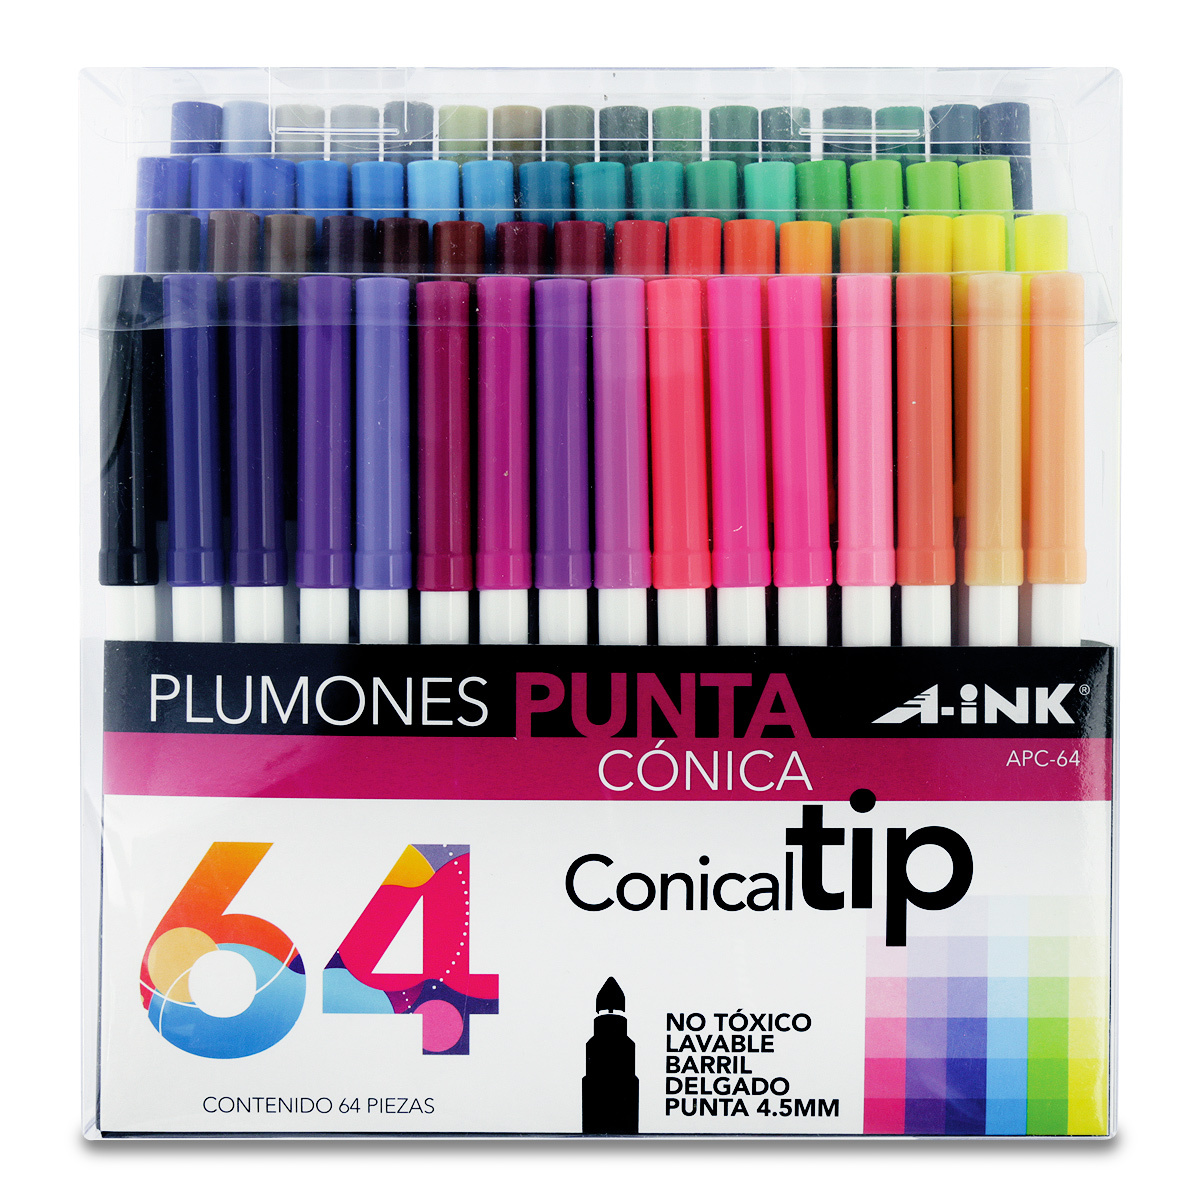 Plumones A-ink Conical Tip APC-64 Punta cónica Colores surtidos 64 piezas | Office Depot Mexico